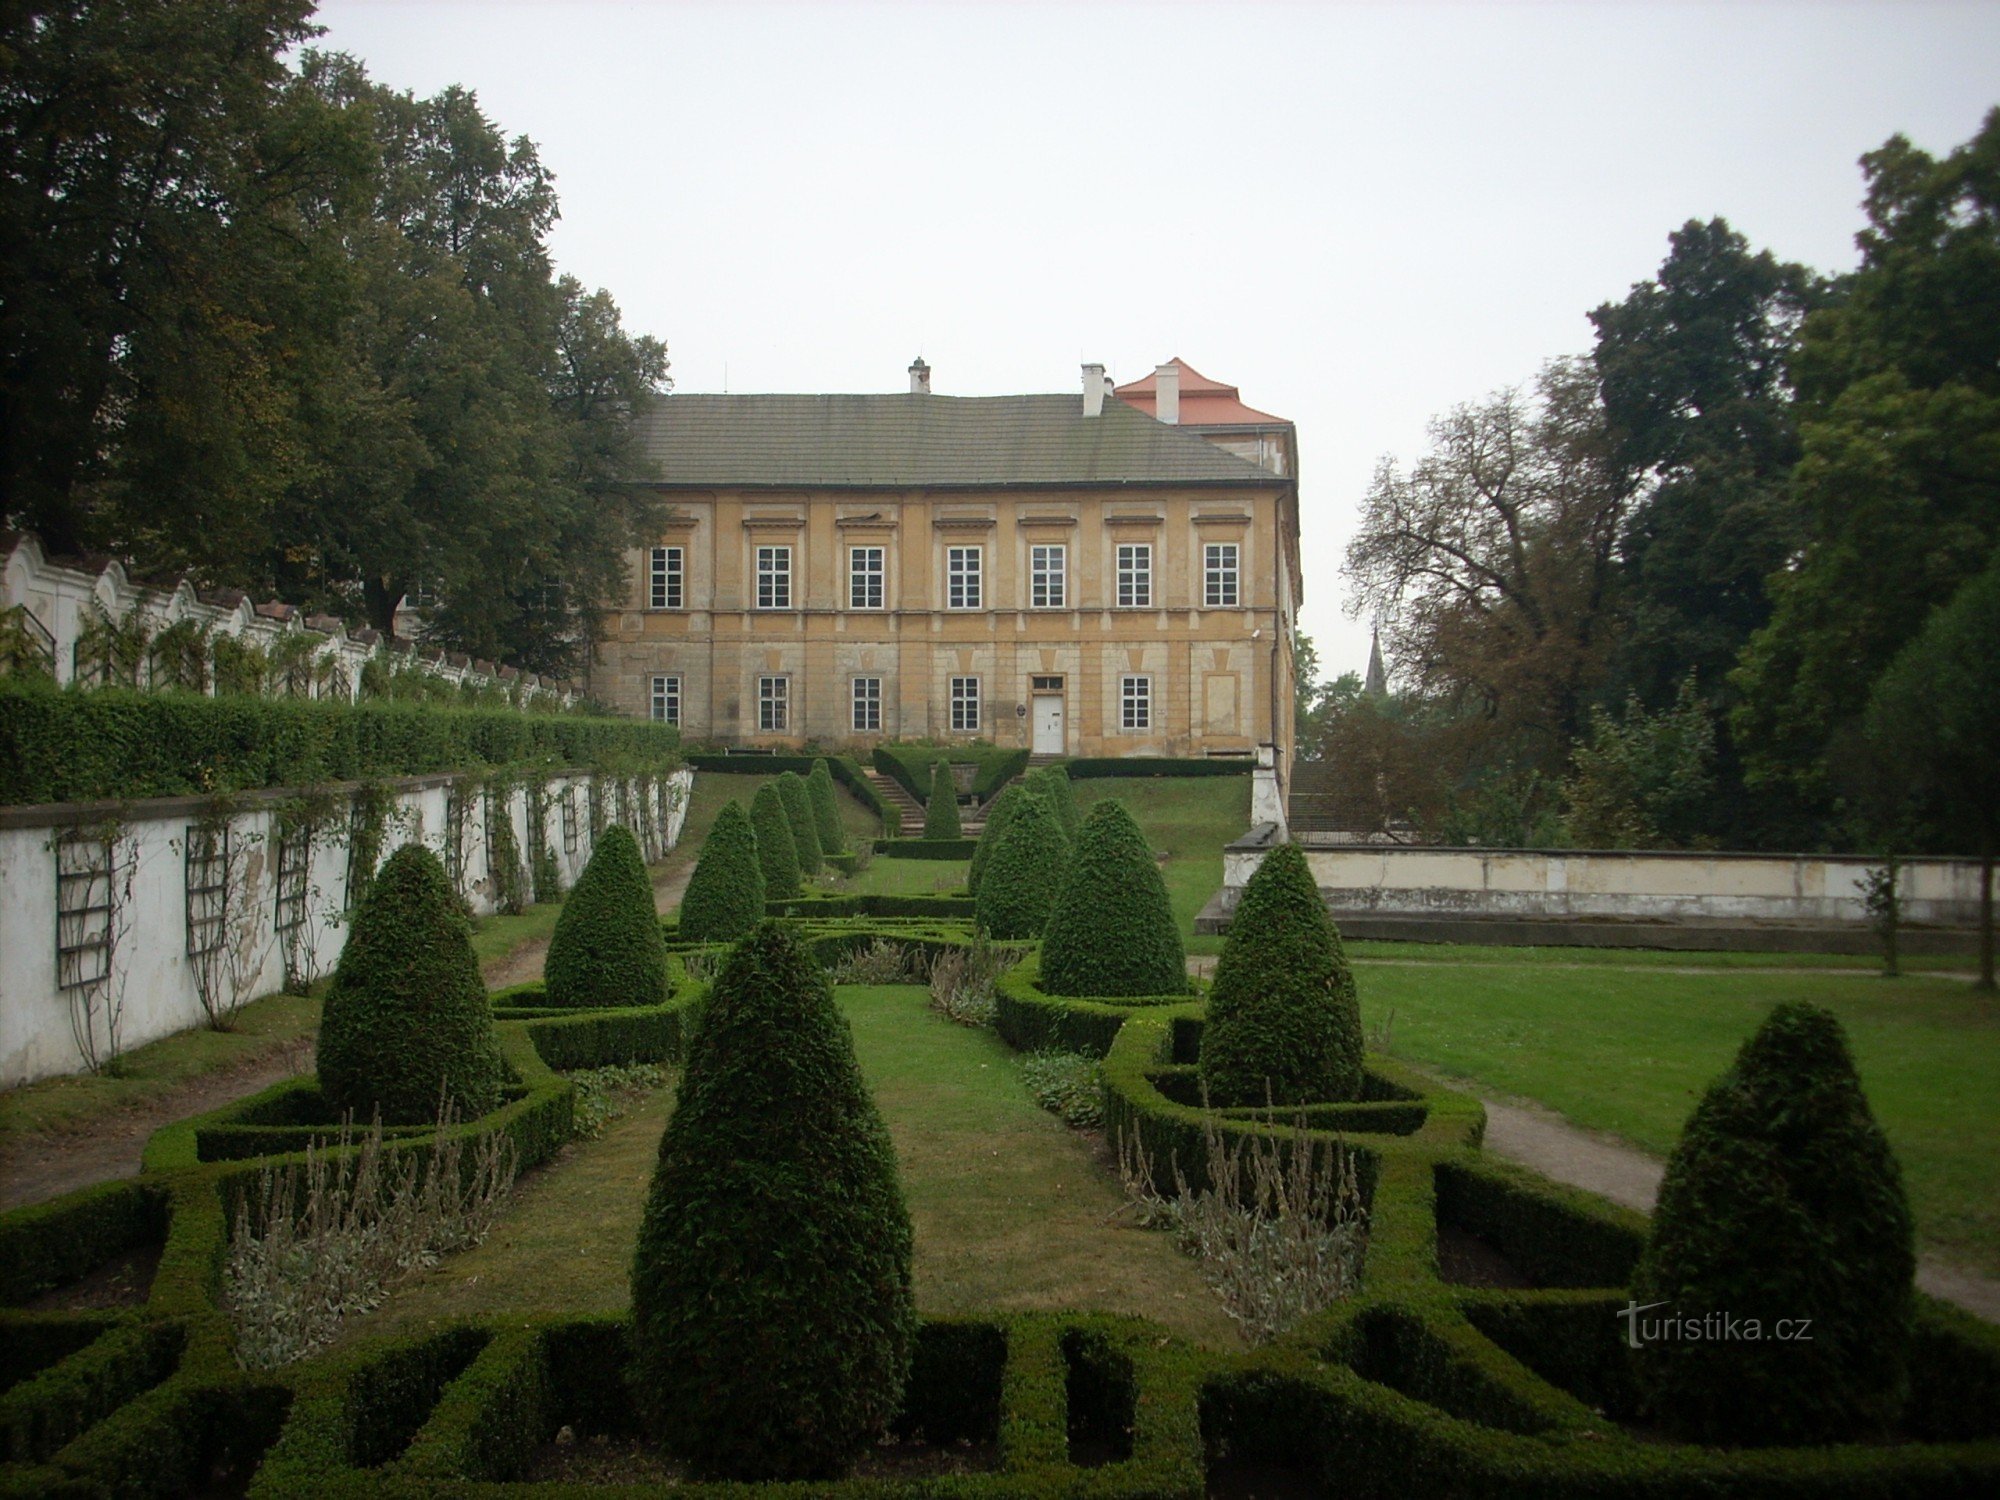 pogled na dvorac s vrtovima dvorca